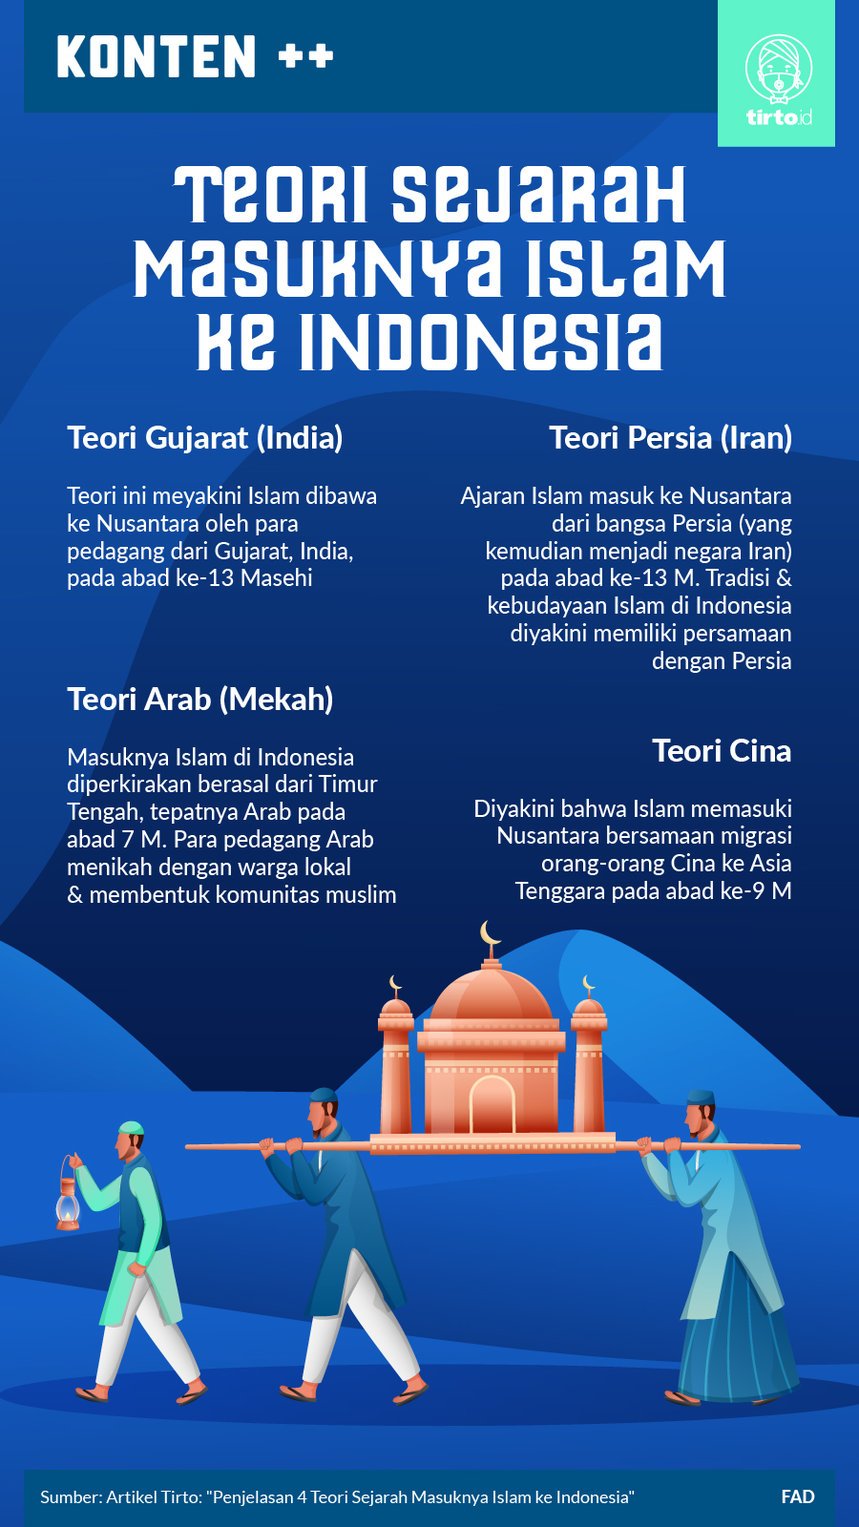 teori tiongkok menjelaskan bahwa masuknya ajaran islam di indonesia khususnya jawa berasal dari para perantau tiongkok yang melakukan transaksi perdagangan hal ini dapat dibuktikan dengan adanya